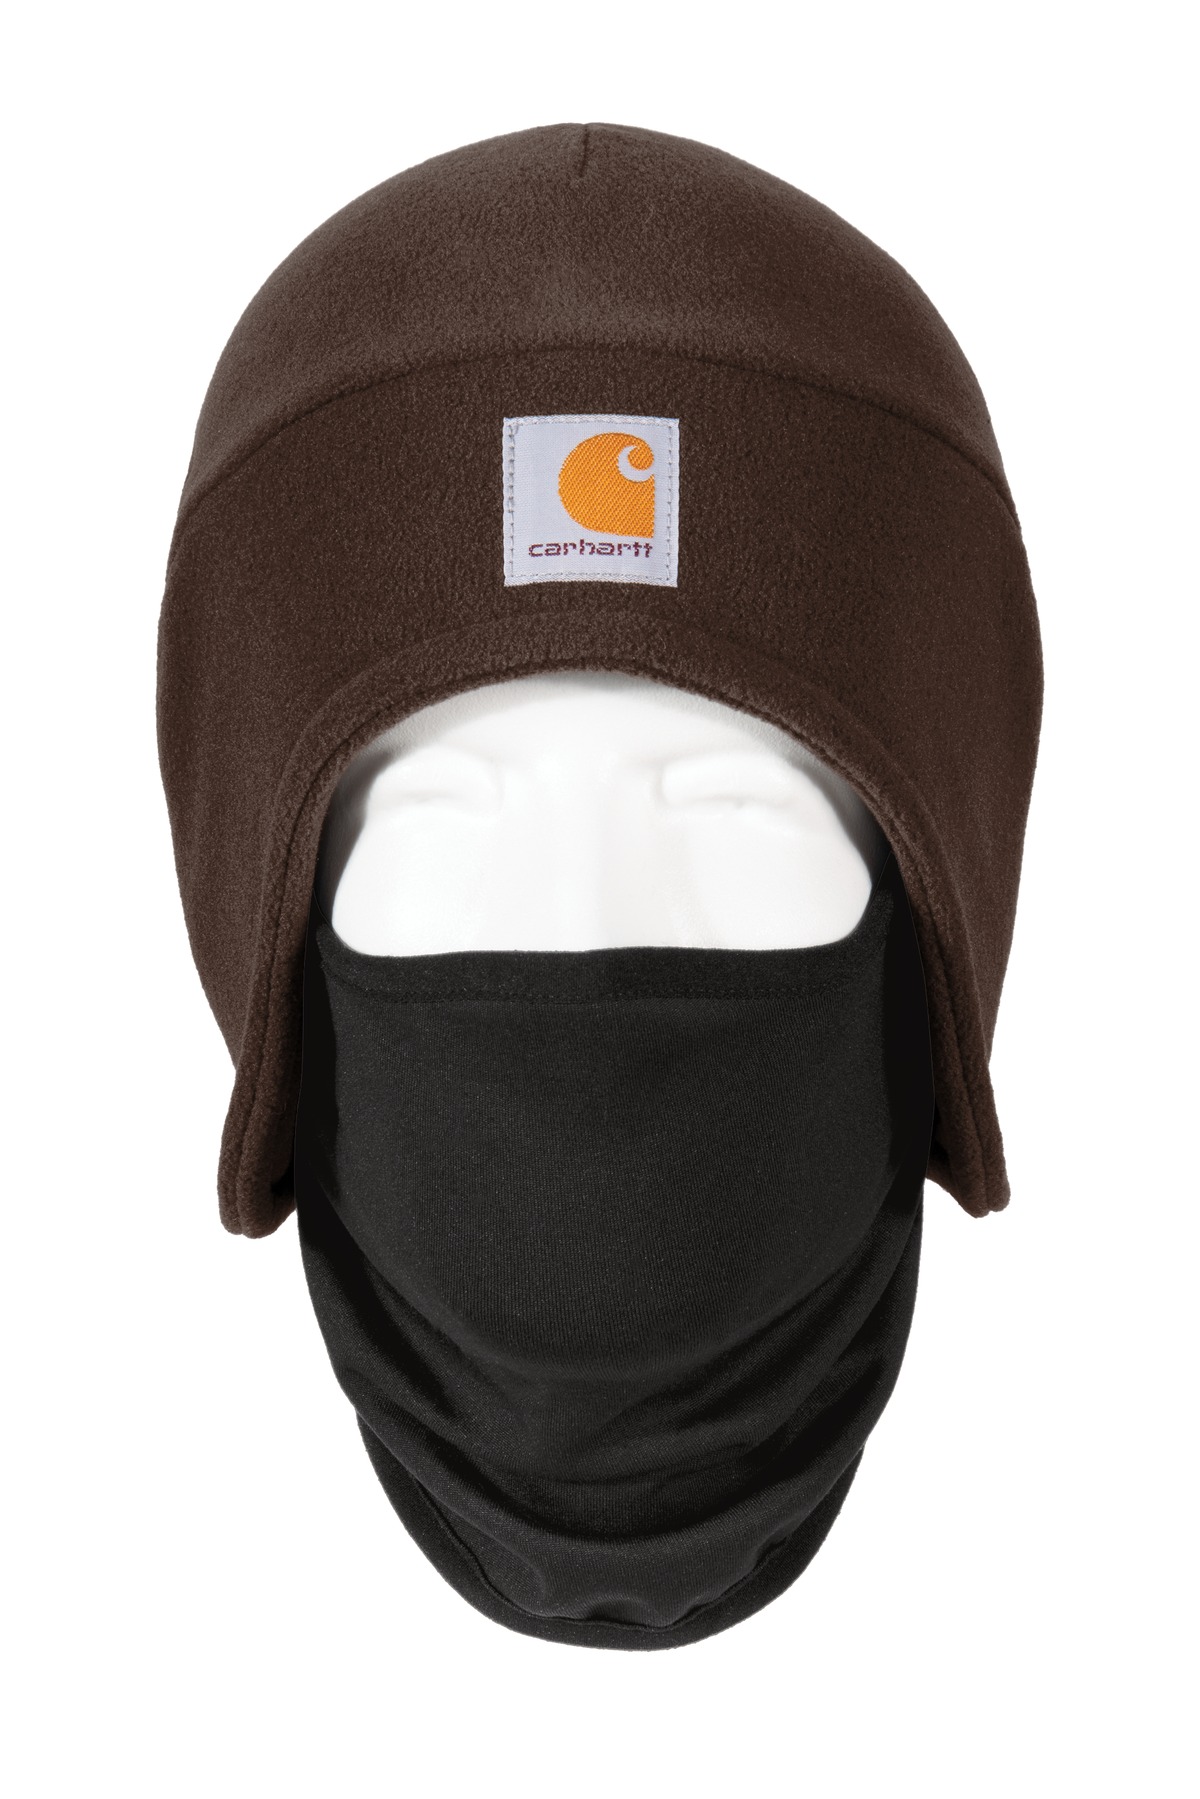 Carhartt  Fleece 2-In-1 Headwear. CTA202